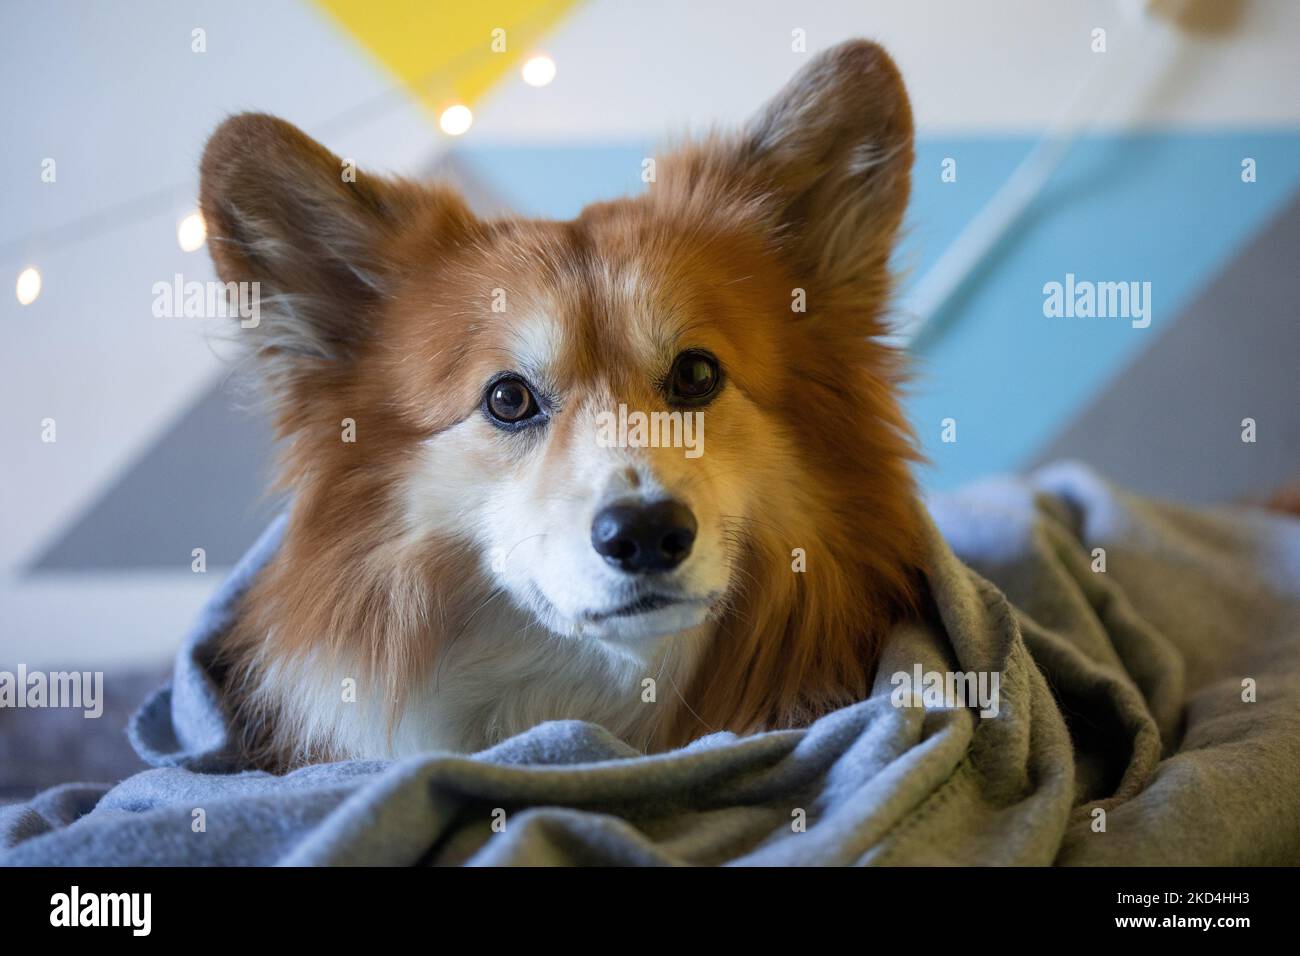 gros plan portrait corgi peluche chien allongé sur une couverture Banque D'Images